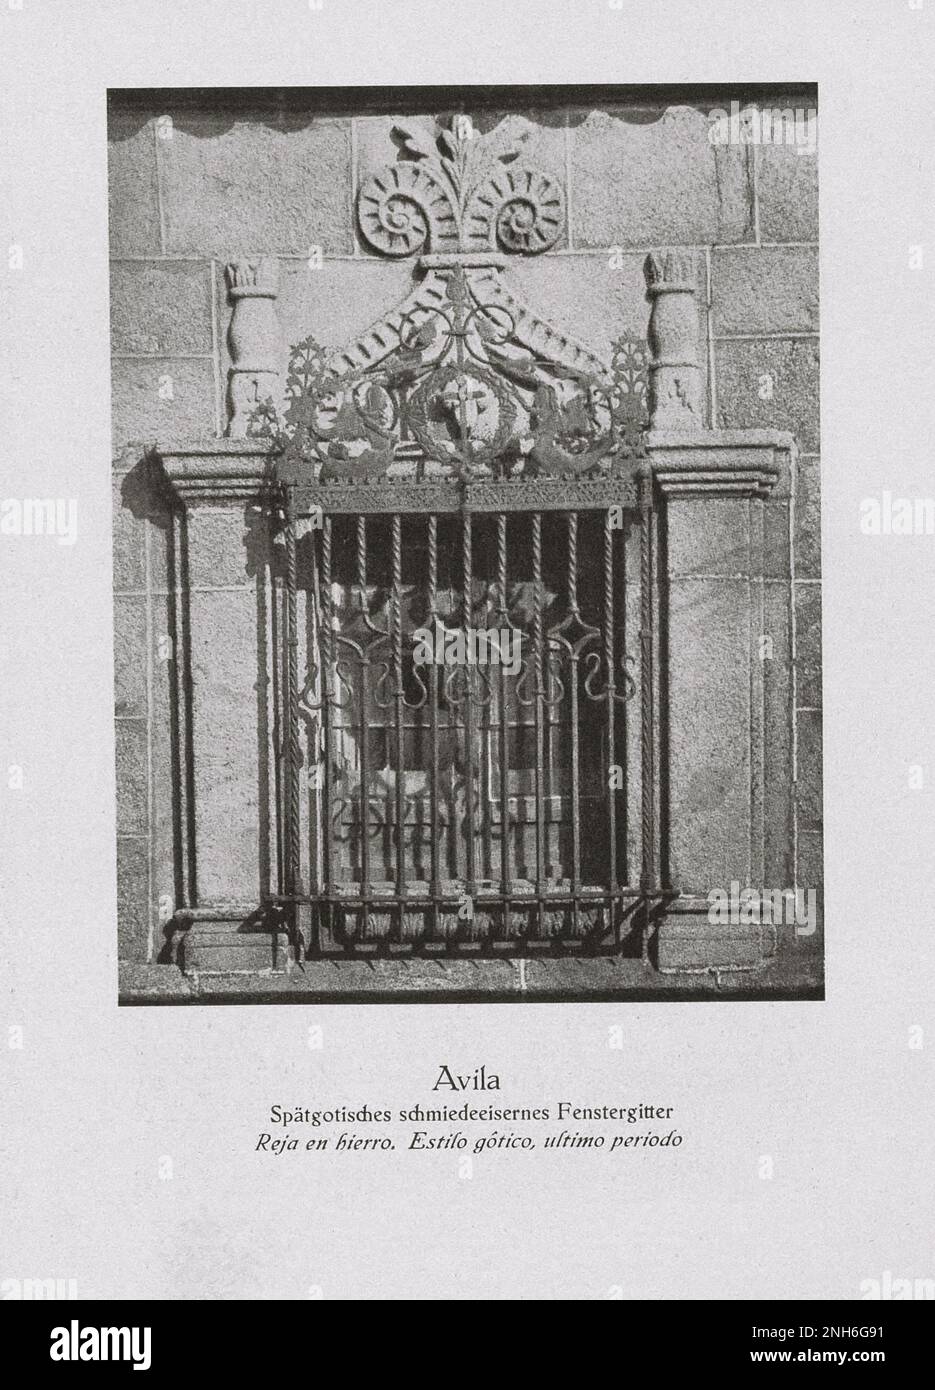 Vecchia Spagna. Foto d'epoca di Avila. Ringhiera decorativa in ferro battuto tardo gotico. Foto Stock